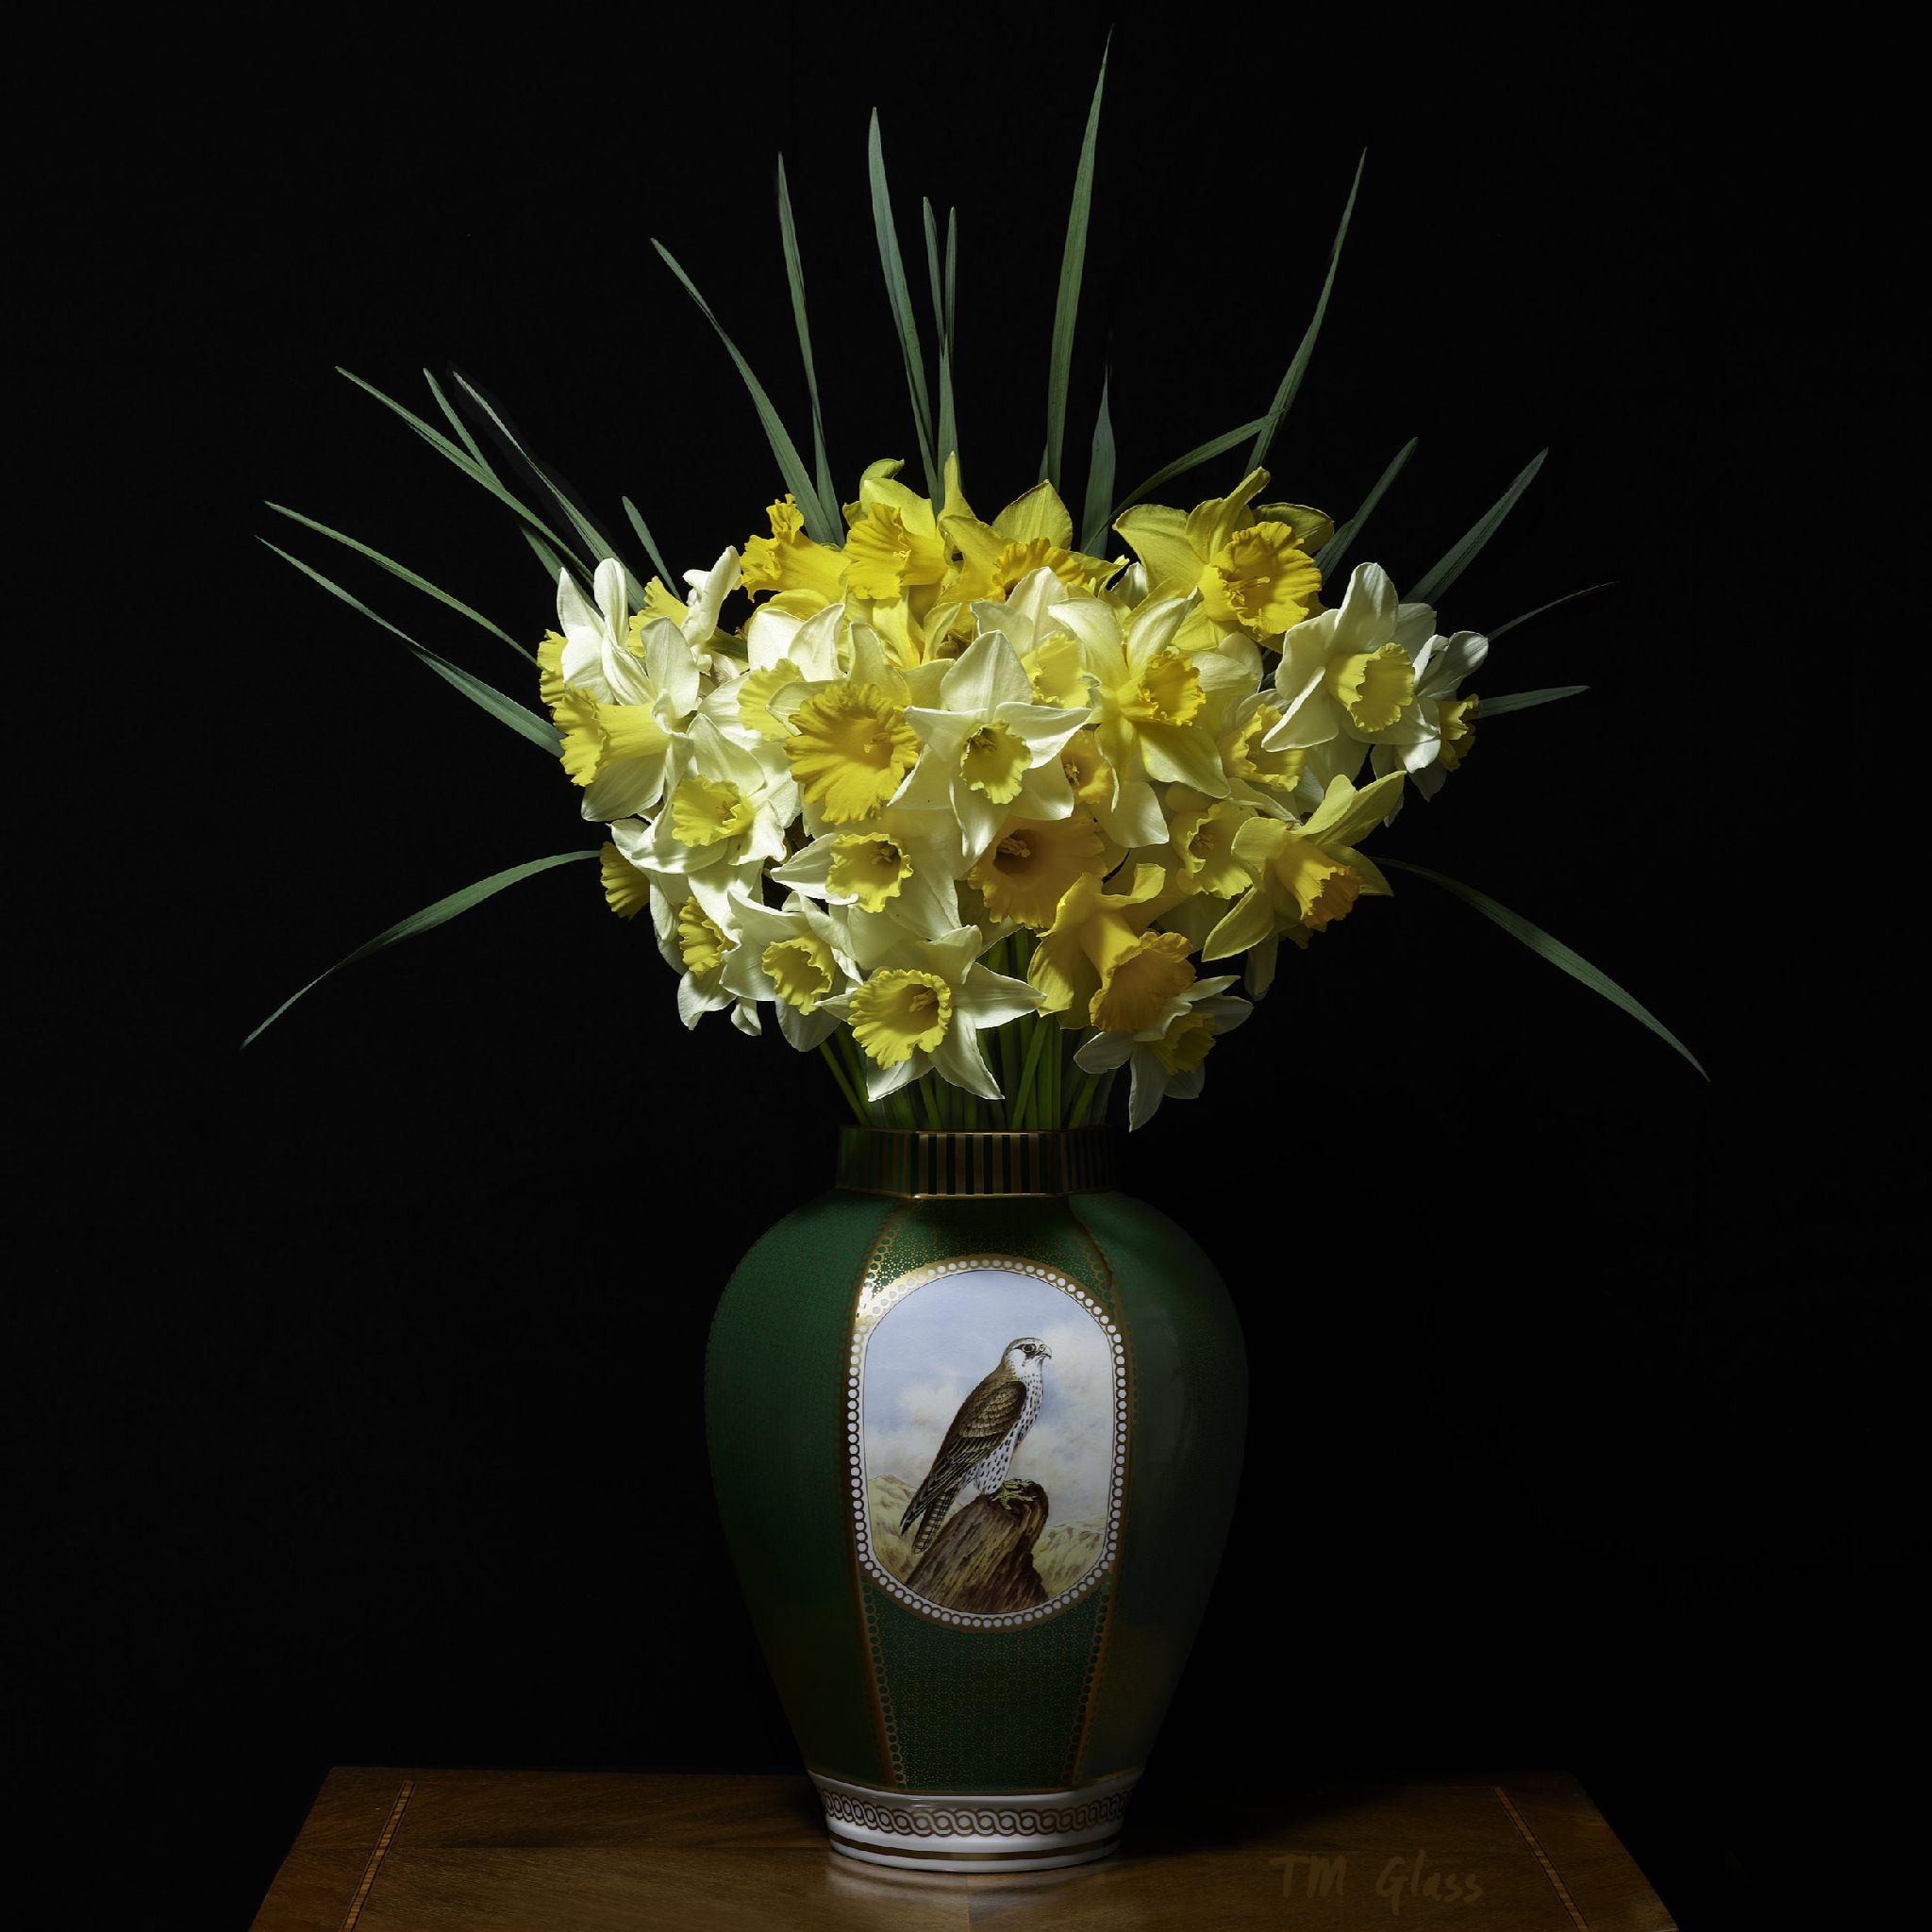 Narcisse dans un vase en Falcon vert - Photograph de T.M. Glass